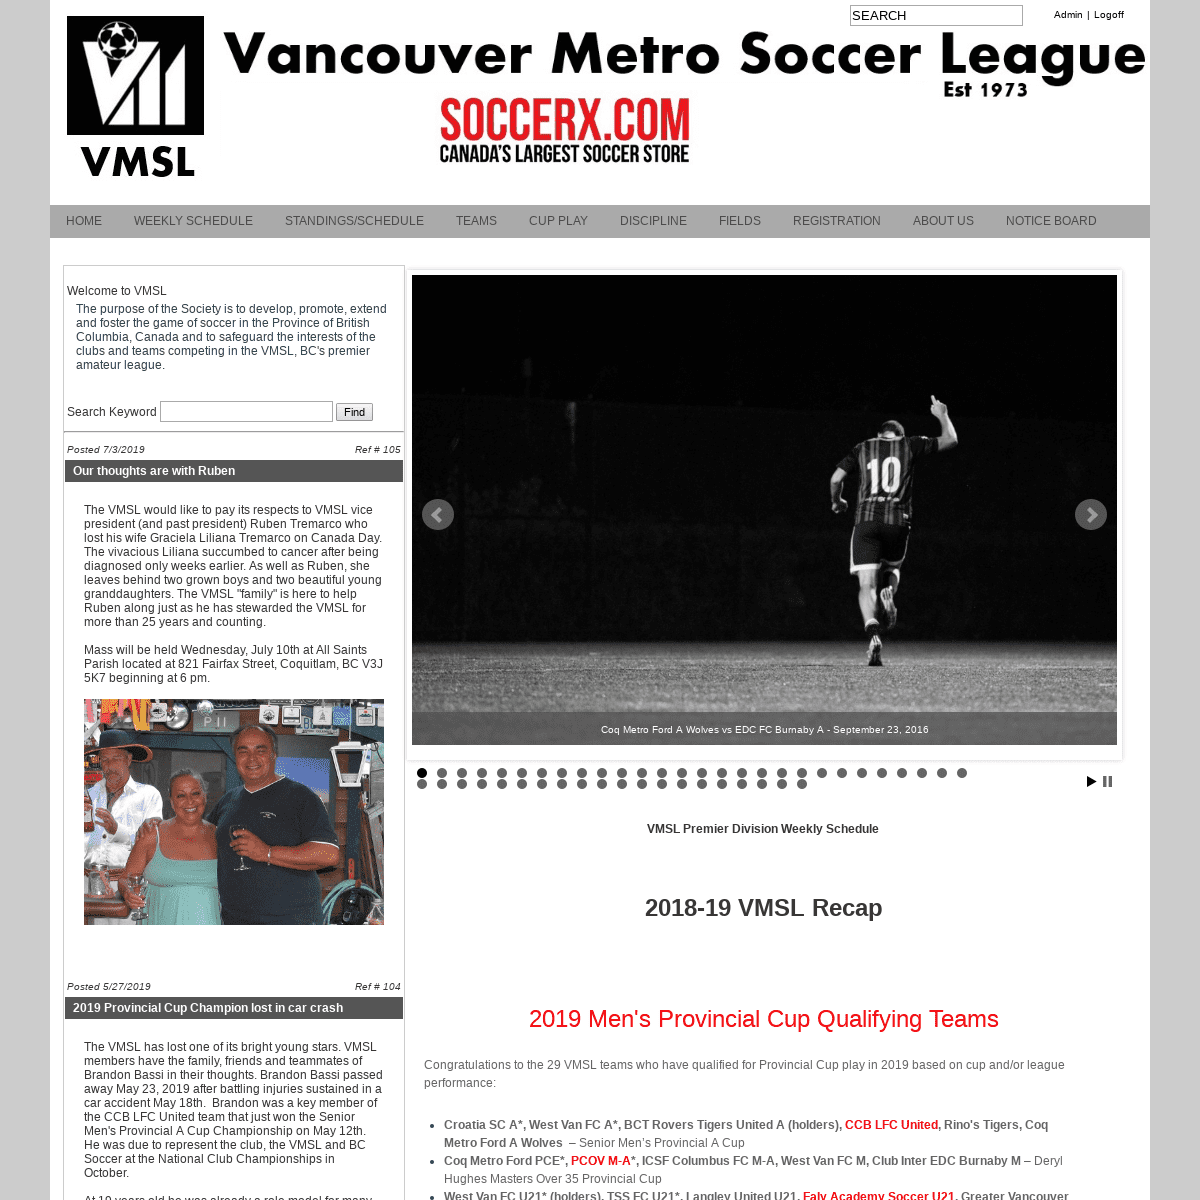 Vancouver Metro Soccer League: Vancouver Metro Soccer League